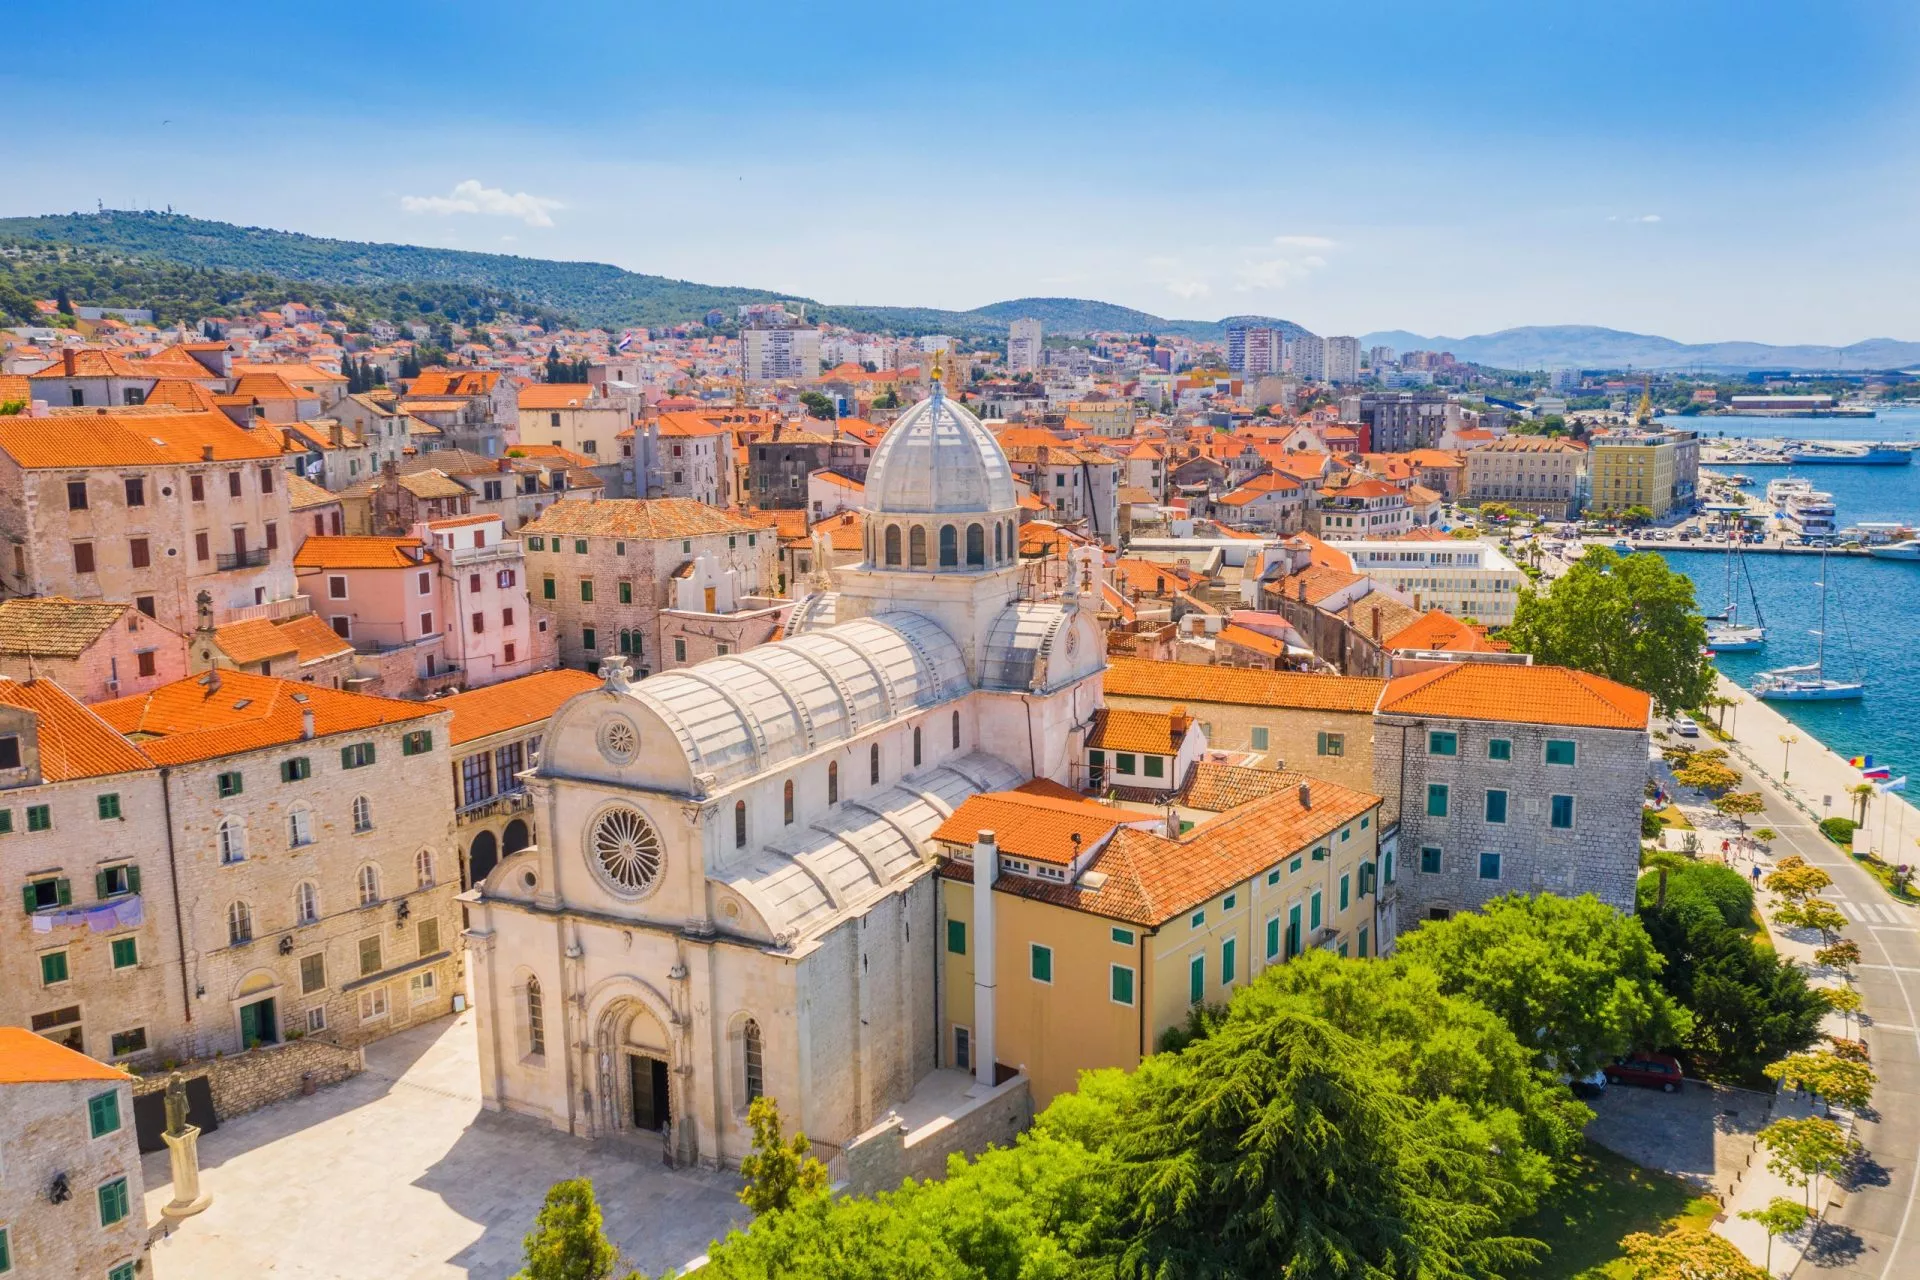 Kroatia, Sibenikin kaupunki, panoraamanäkymä vanhaan keskustaan ja Pyhän Jaakobin katedraaliin, joka on Kroatian tärkein renessanssin aikakauden arkkitehtoninen monumentti, Unescon maailmanperintökohde.